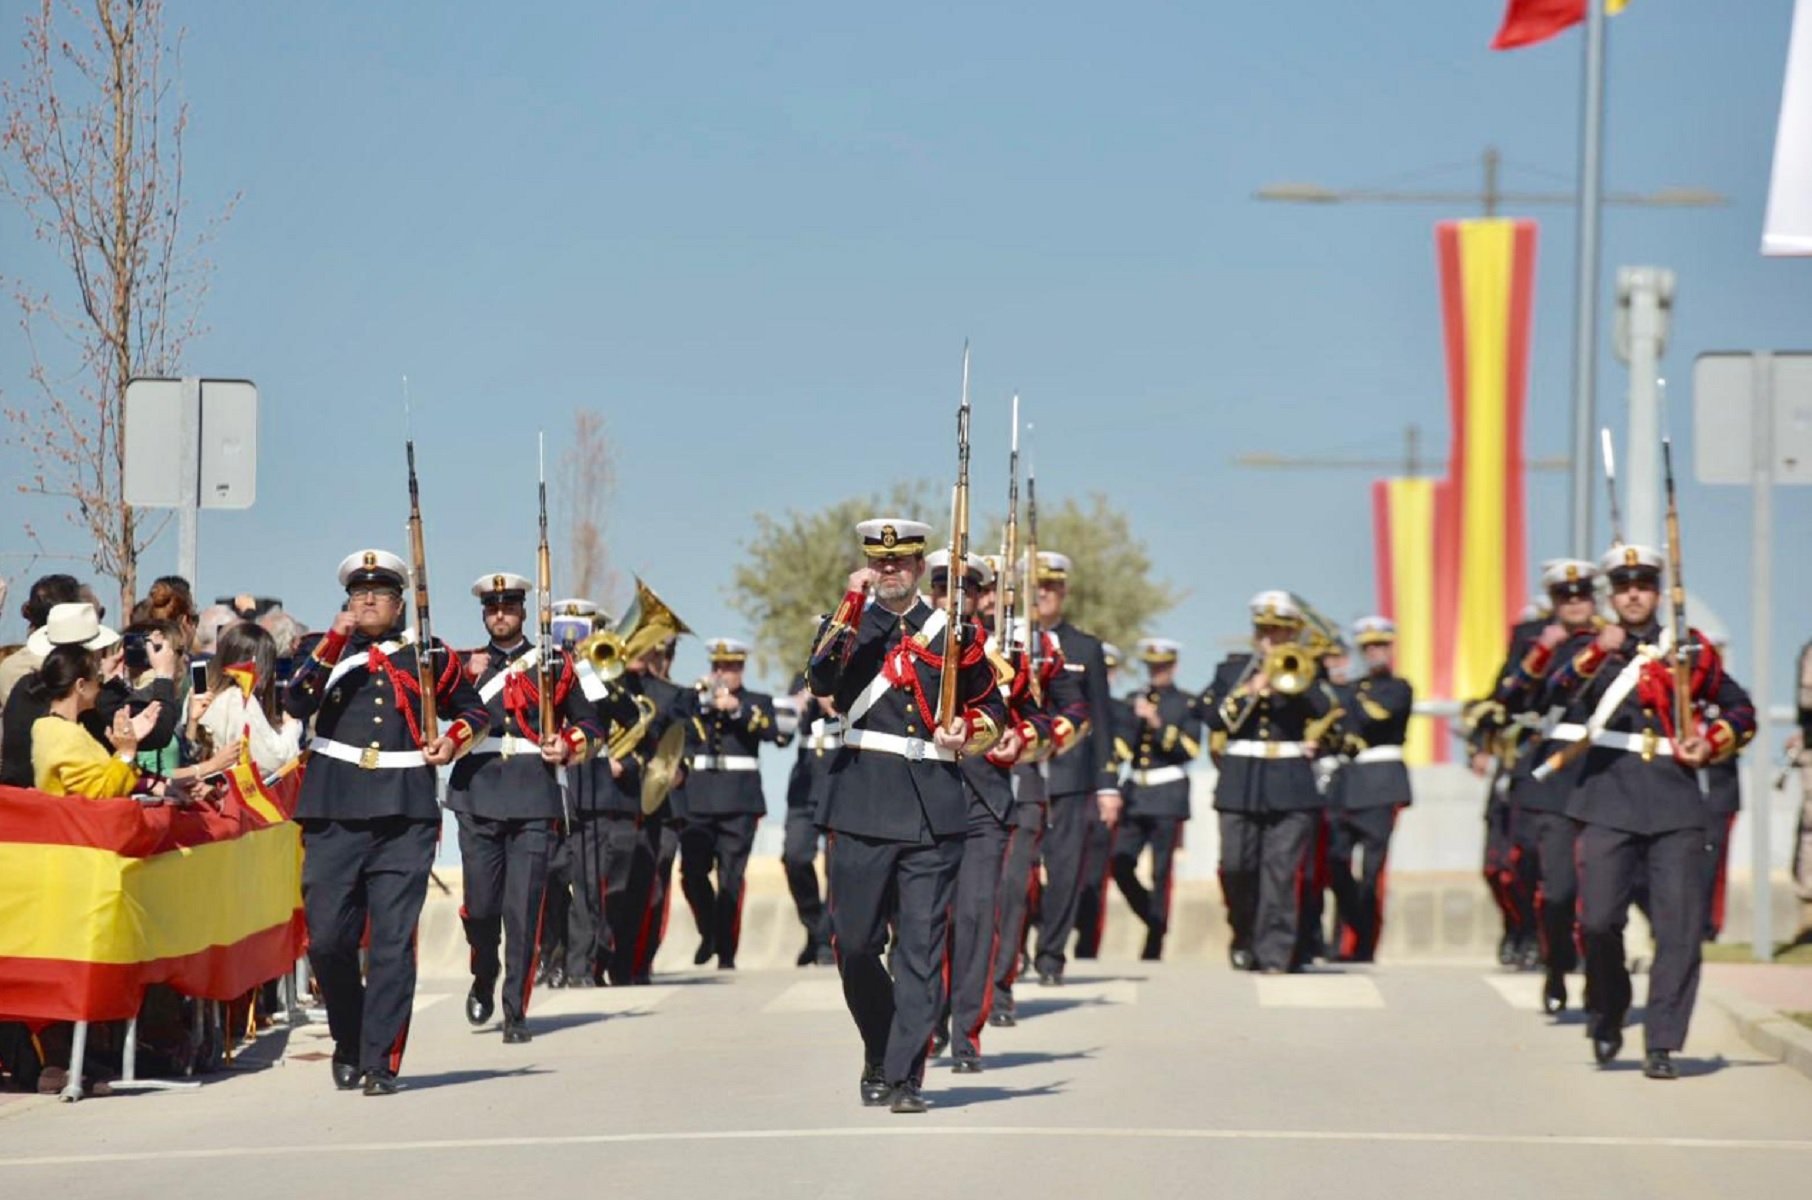 Un alcalde del PP organiza un acto patriótico con más militares que vecinos